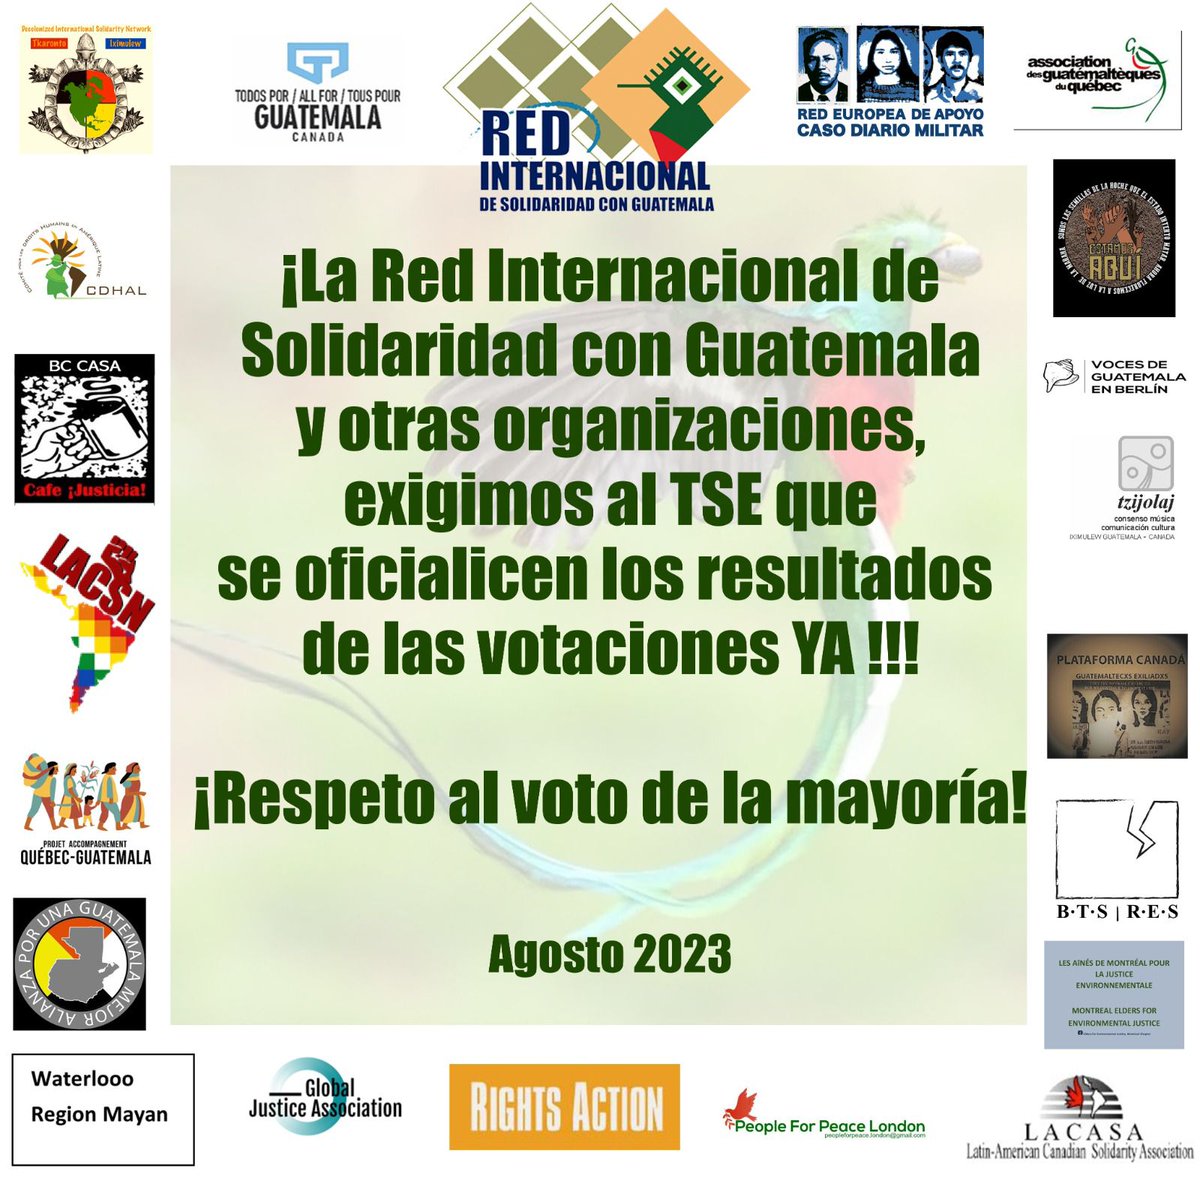 La Red Internacional de Solidaridad con Guatemala y otras organizaciones se une al pueblo de #Guatemala en exigir que se oficialicen los resultados de las votaciones. 
El respeto al voto es uno de los principios basicos para una sociedad democrática.
#EleccionesGT2023